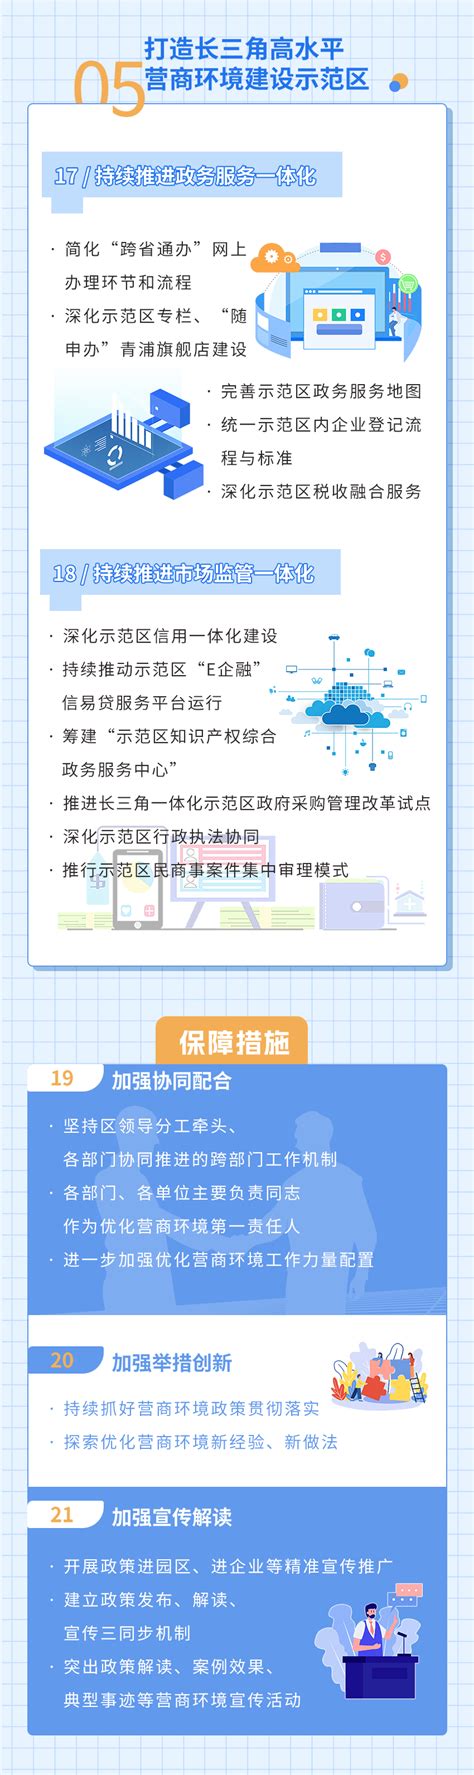 【营商环境】一图读懂丨深圳市2023年优化营商环境工作要点